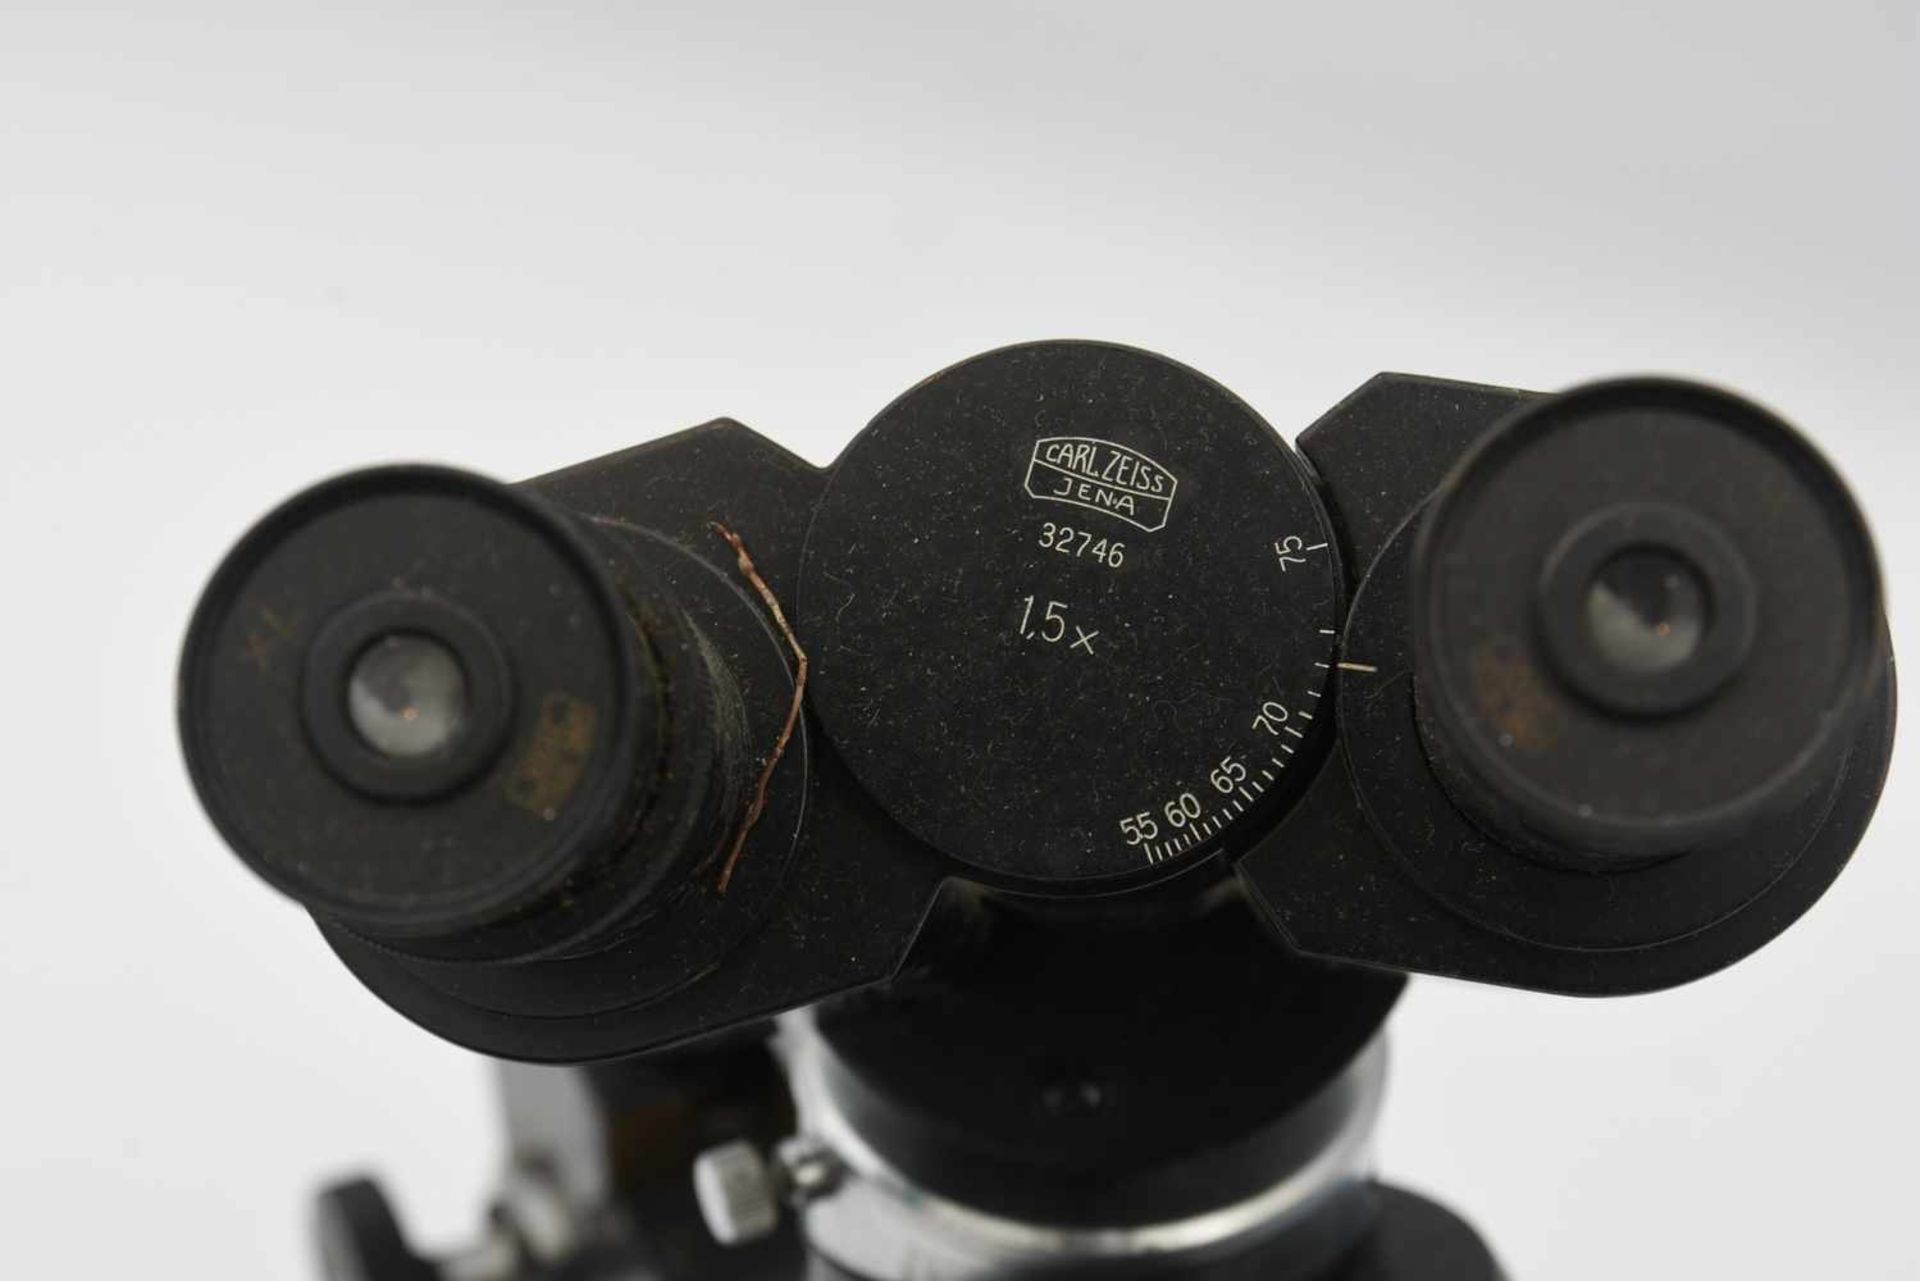 ZEISS MIKROSKOP, Binokulartubus, Deutschland Mitte 20. Jahrhundert Schwarzes Mikroskop der Firma - Bild 2 aus 8